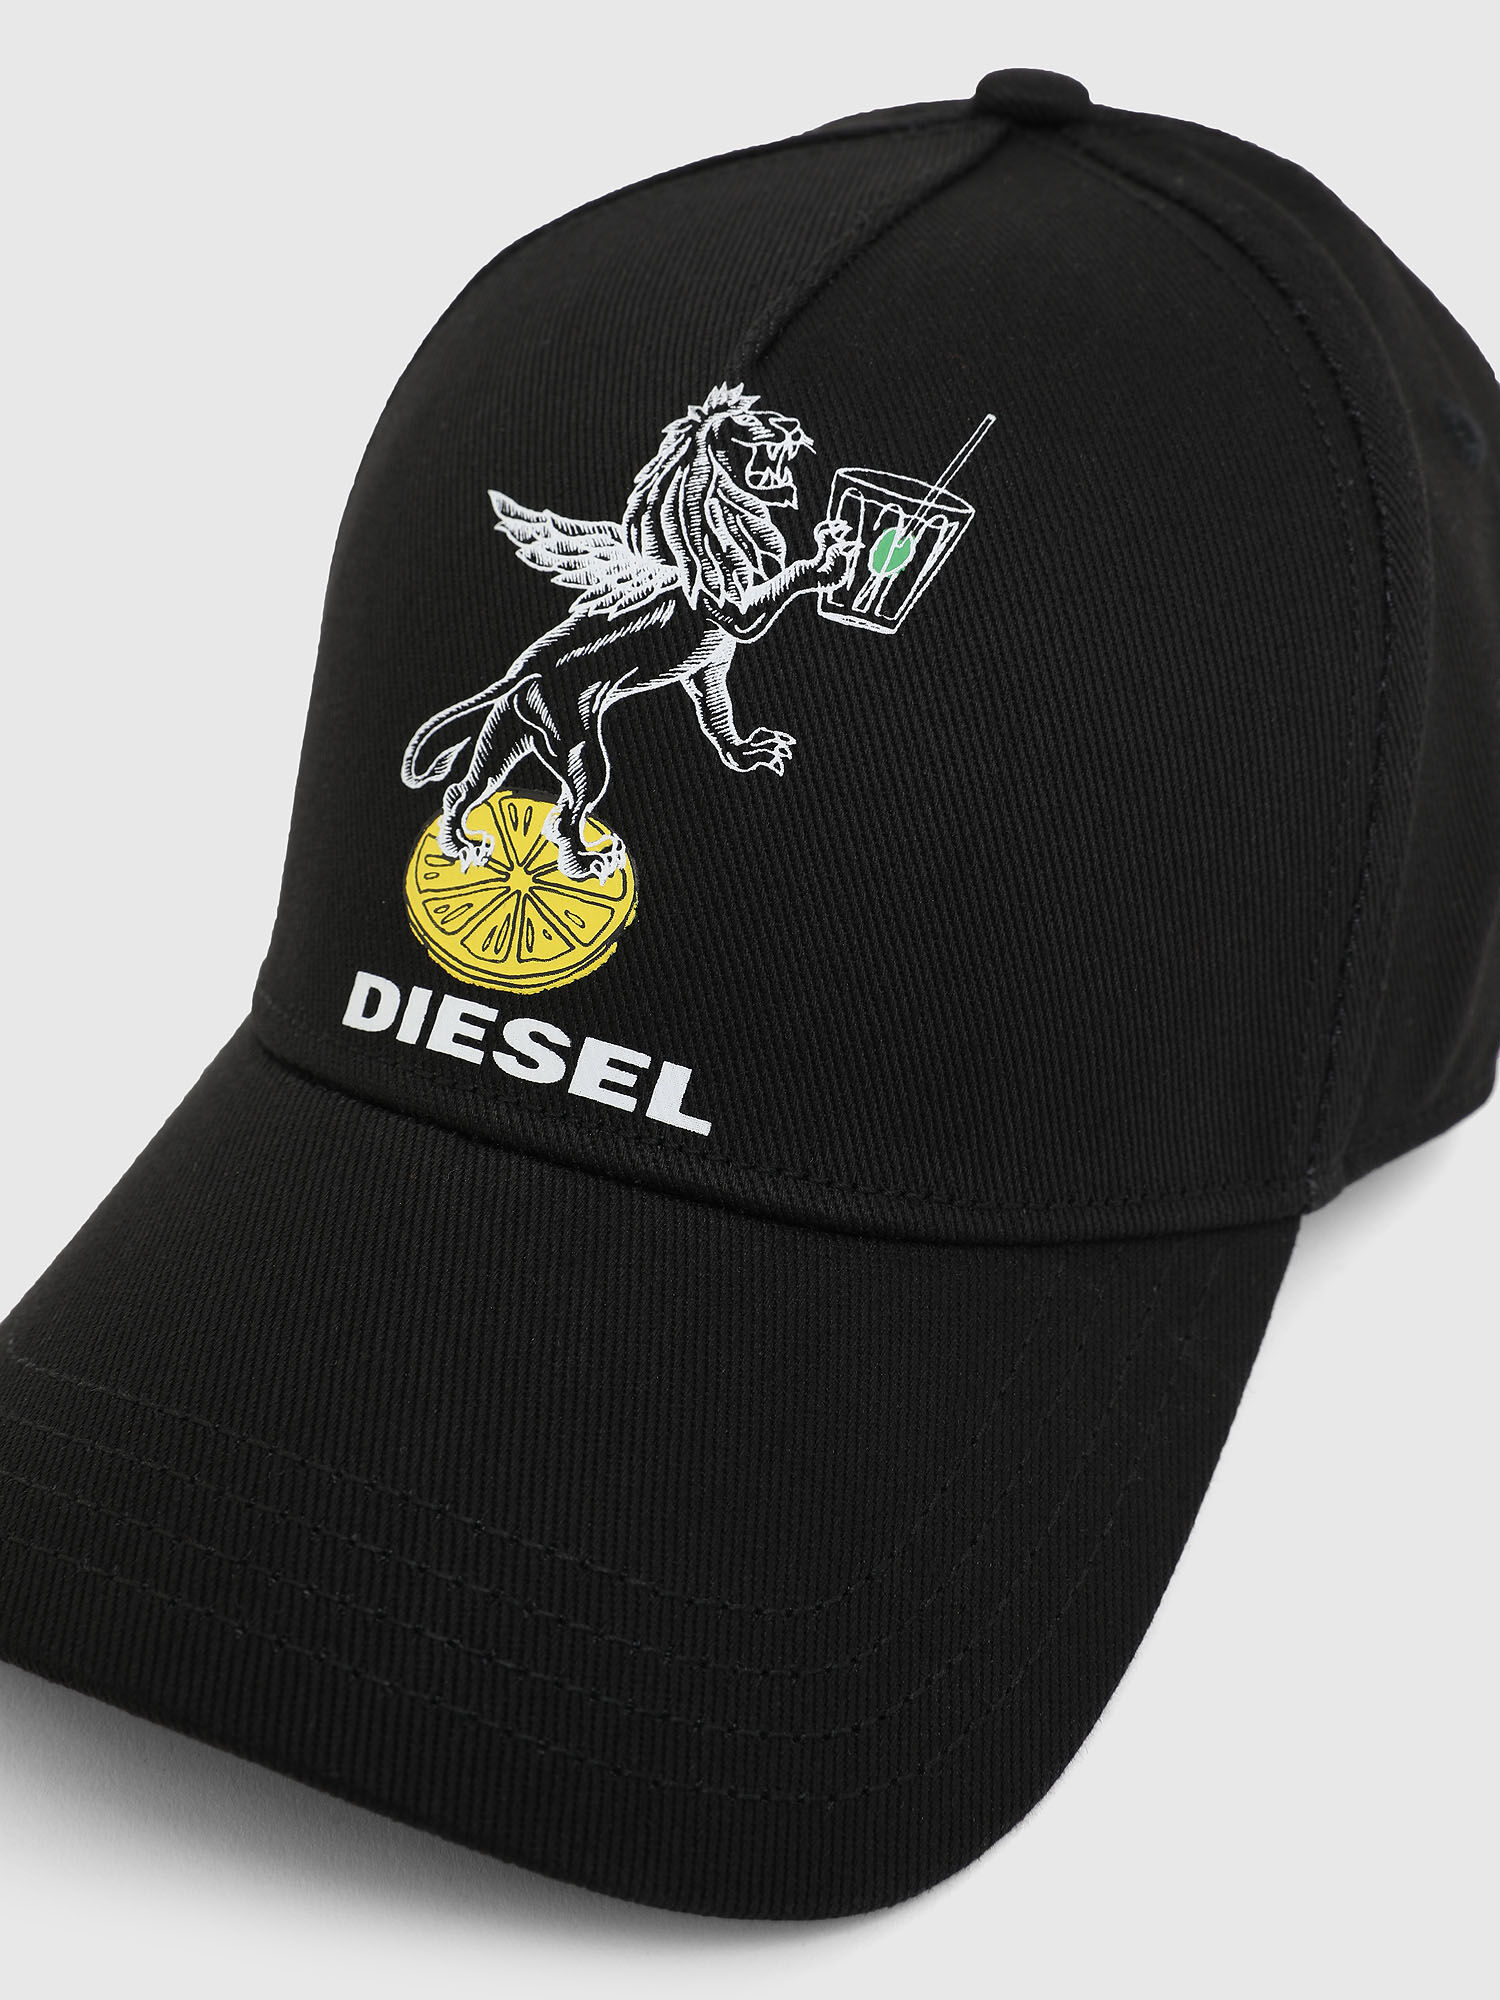 Diesel - VE-CIDIES-LEO, Black - Image 3